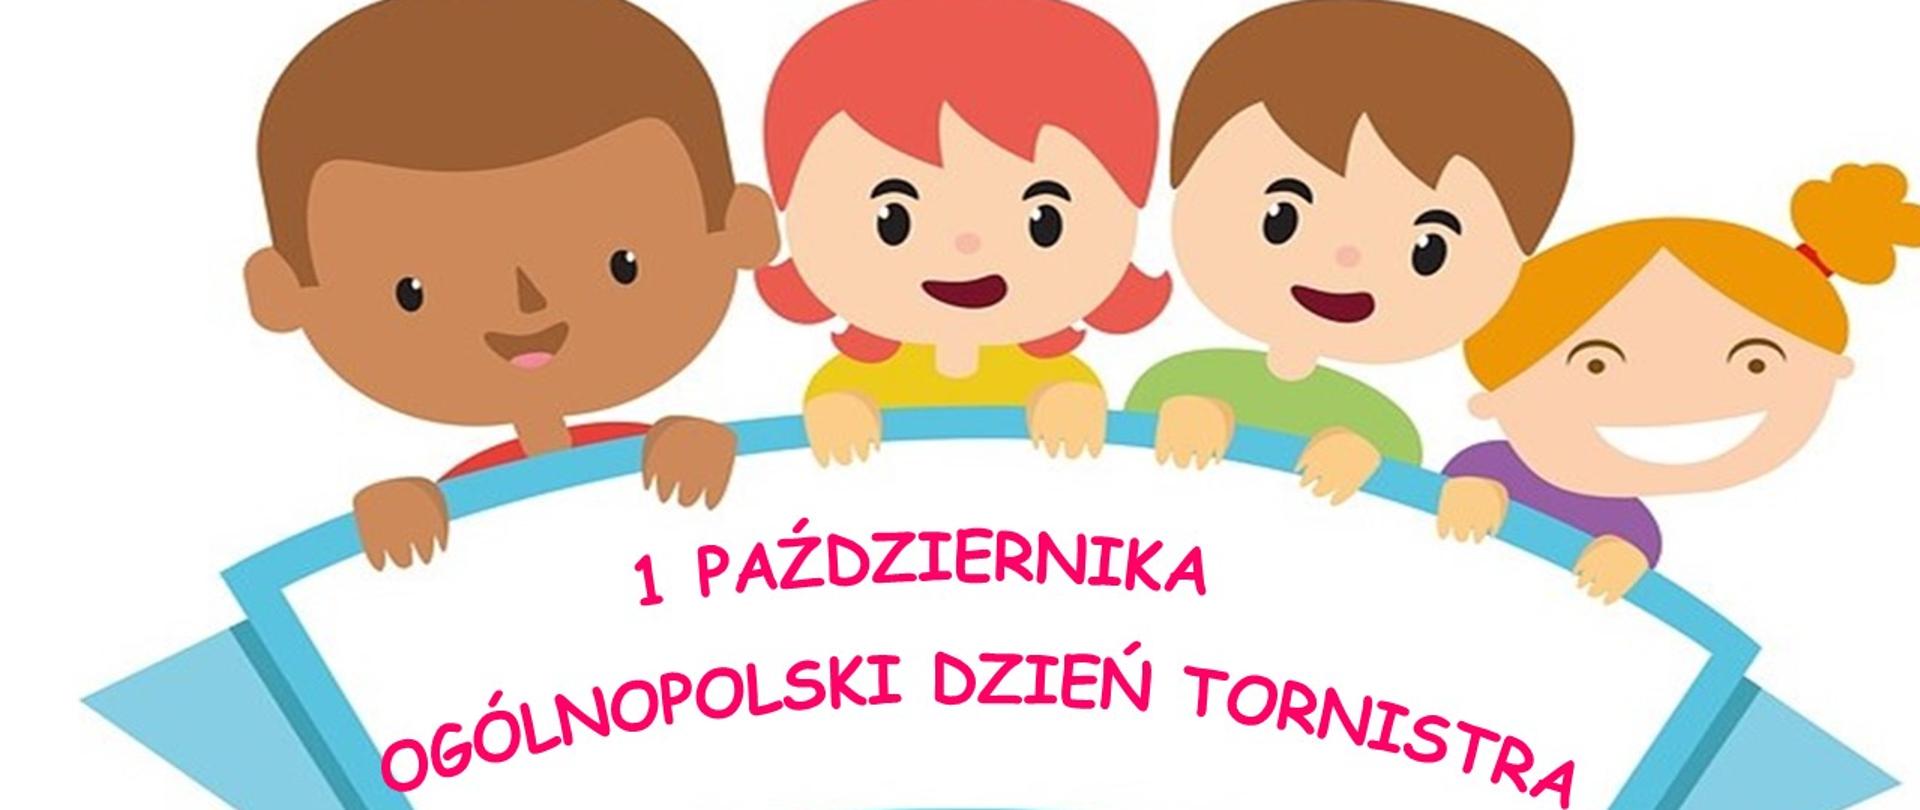 na środku napis - 1 października Ogólnopolski Dzień Tornistra, nad napisem narysowane, uśmiechnięte twarze dzieci